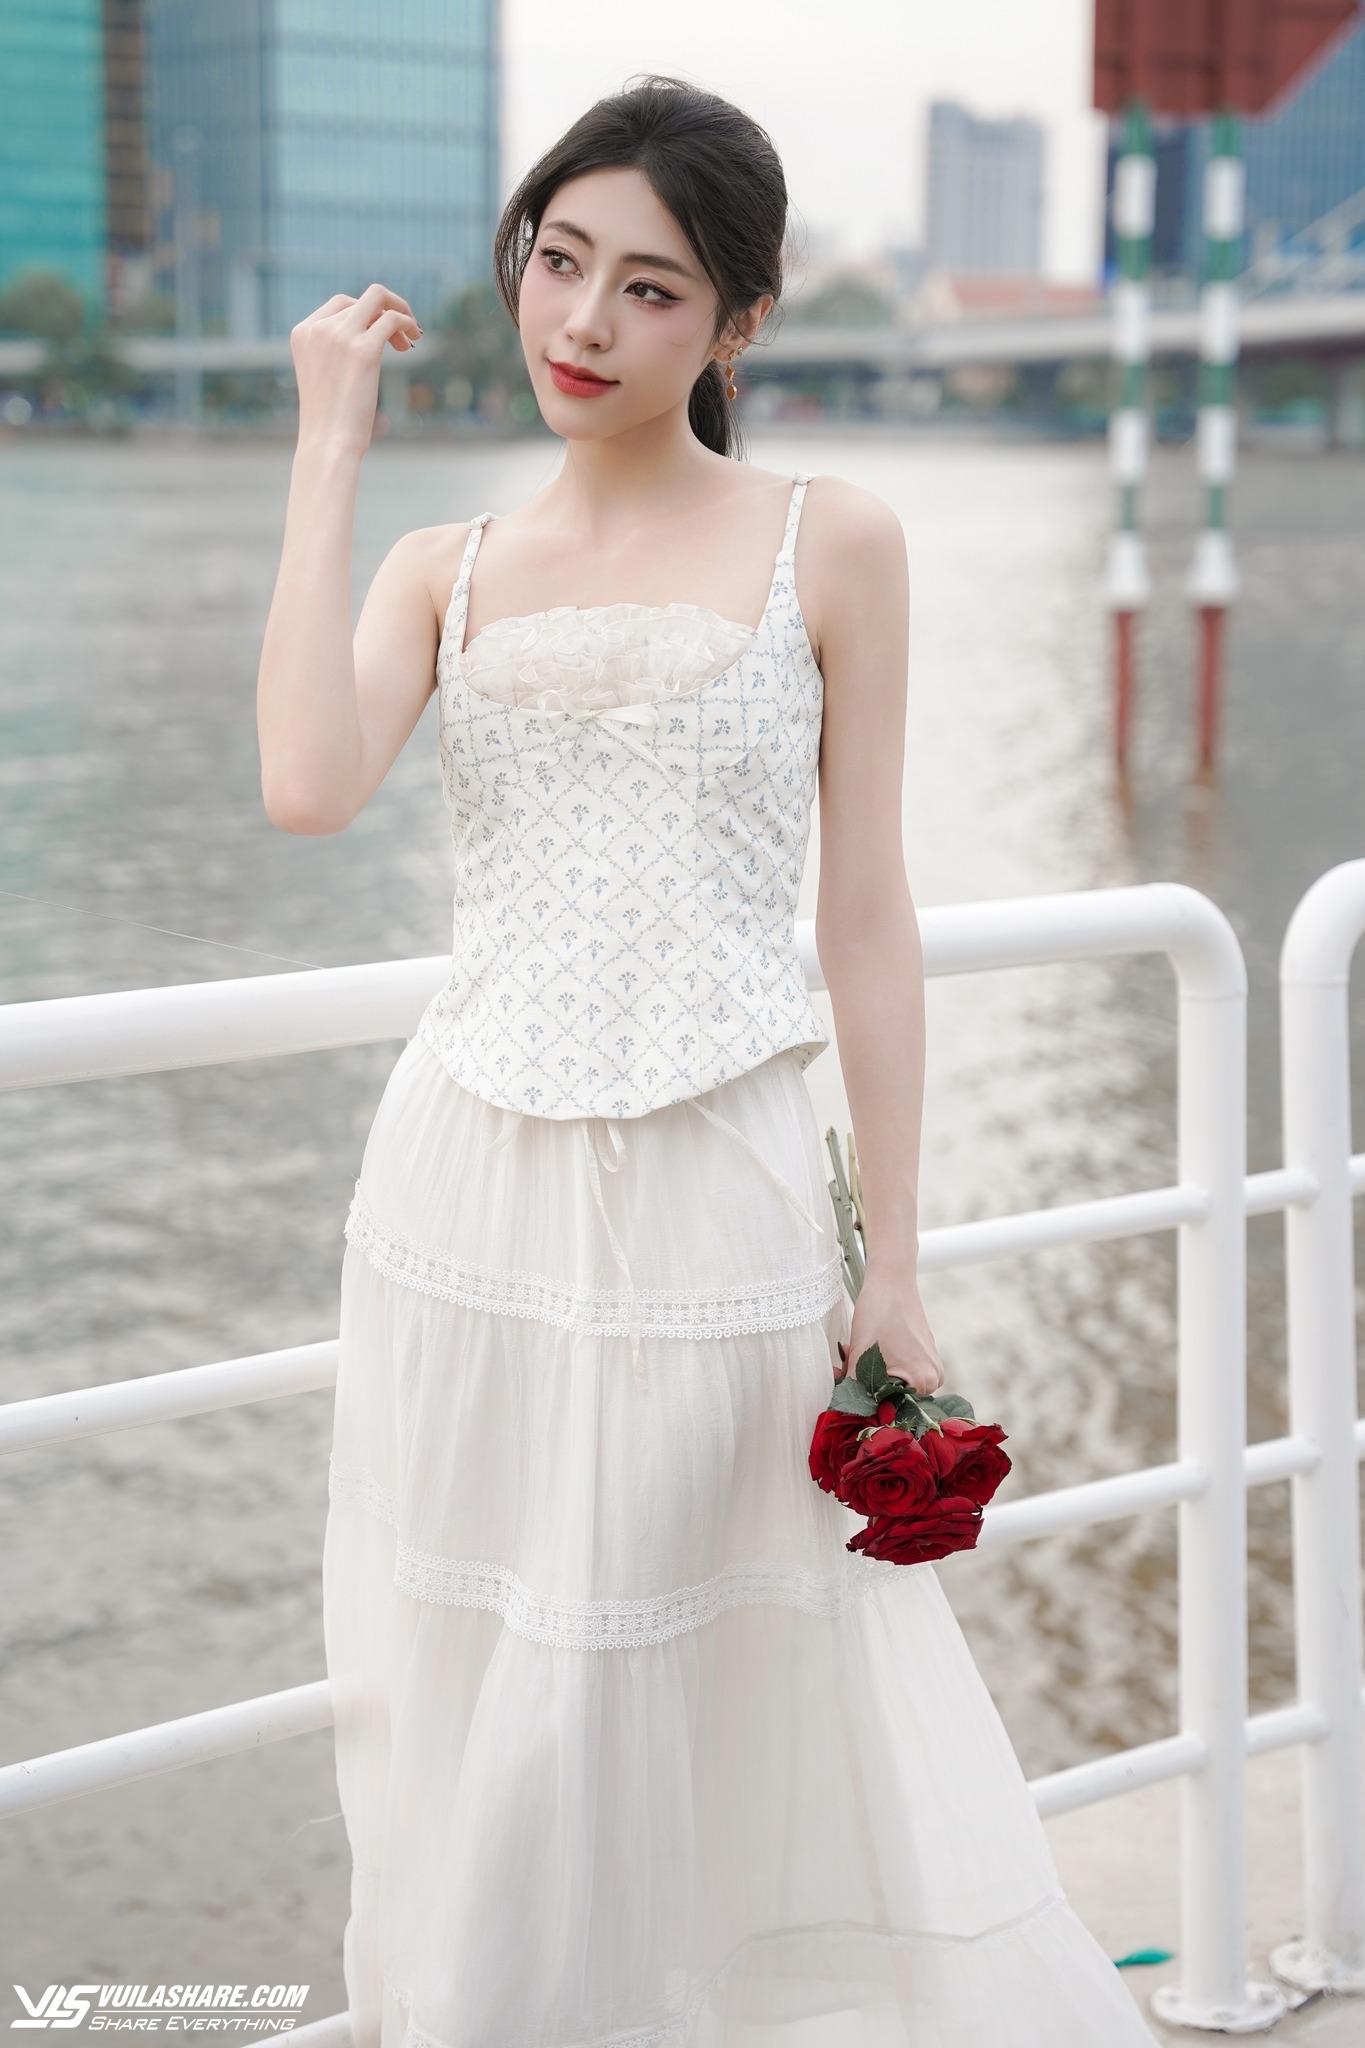 Diện kiểu trang phục in hoa, đảm bảo phong cách mùa hè của nàng sẽ 'lên hương'- Ảnh 3.